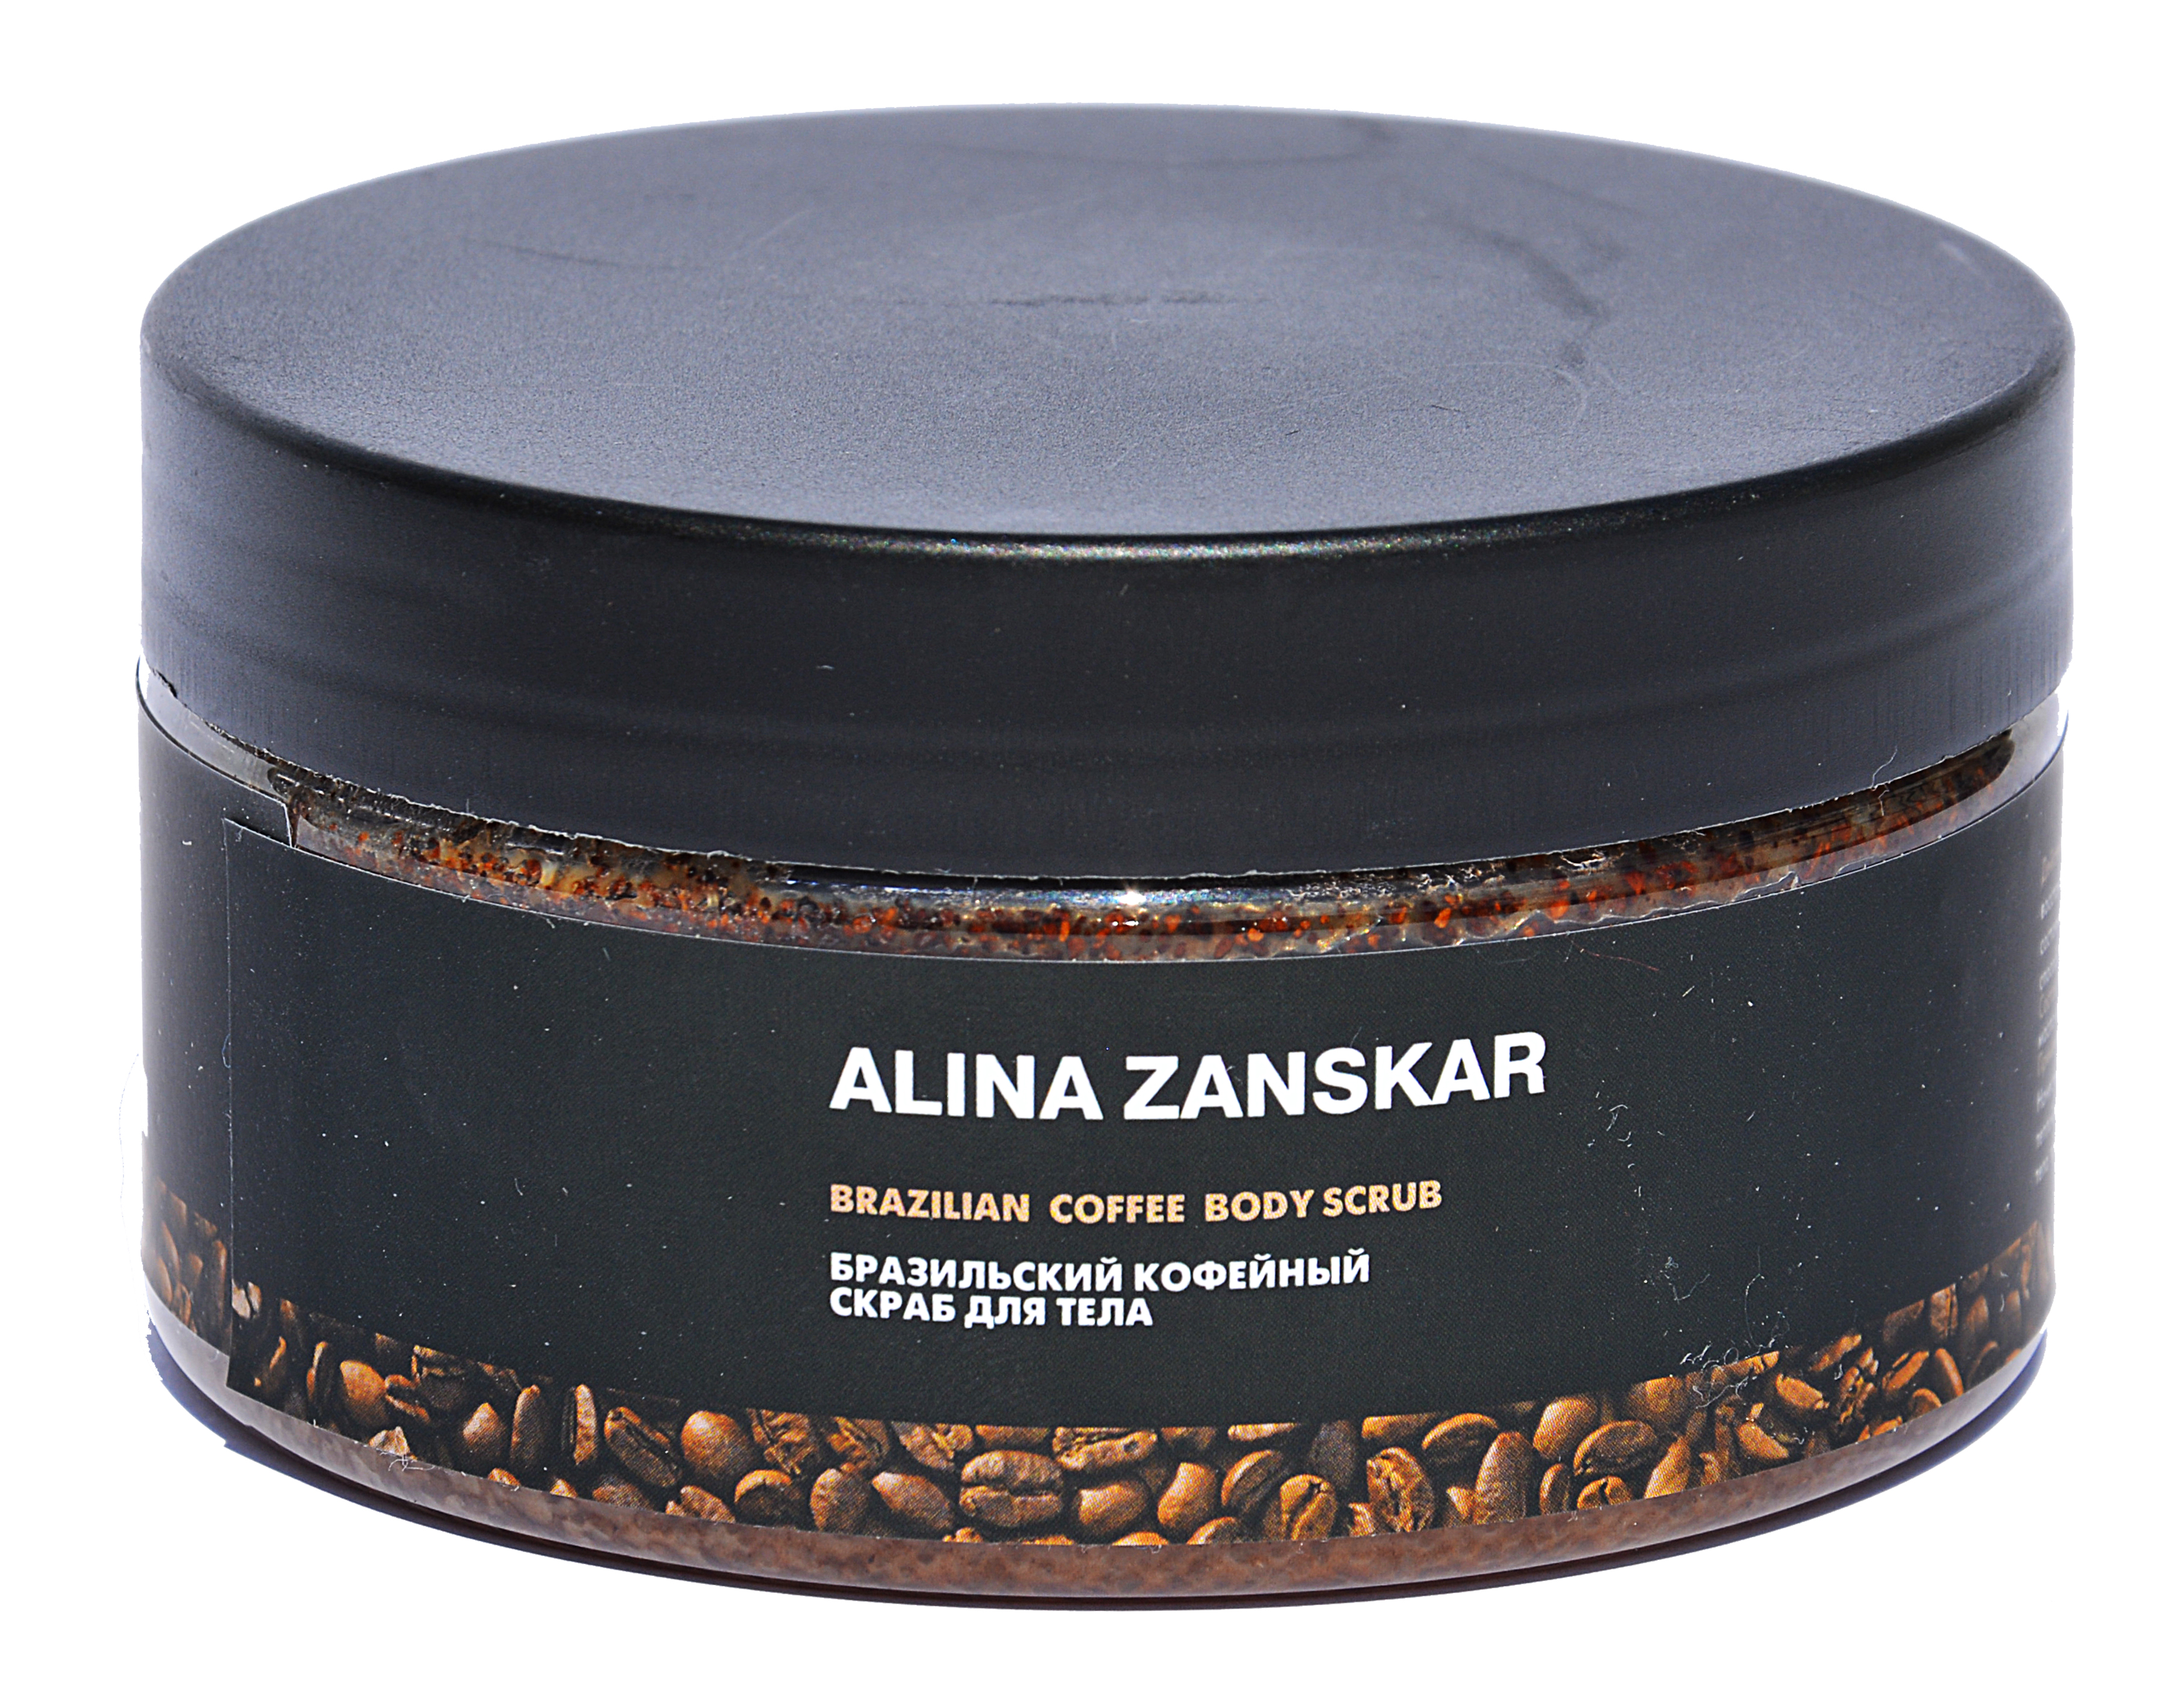 Бразильский кофейный скраб Alina Zanskar в интернет магазине косметики на официальном сайте